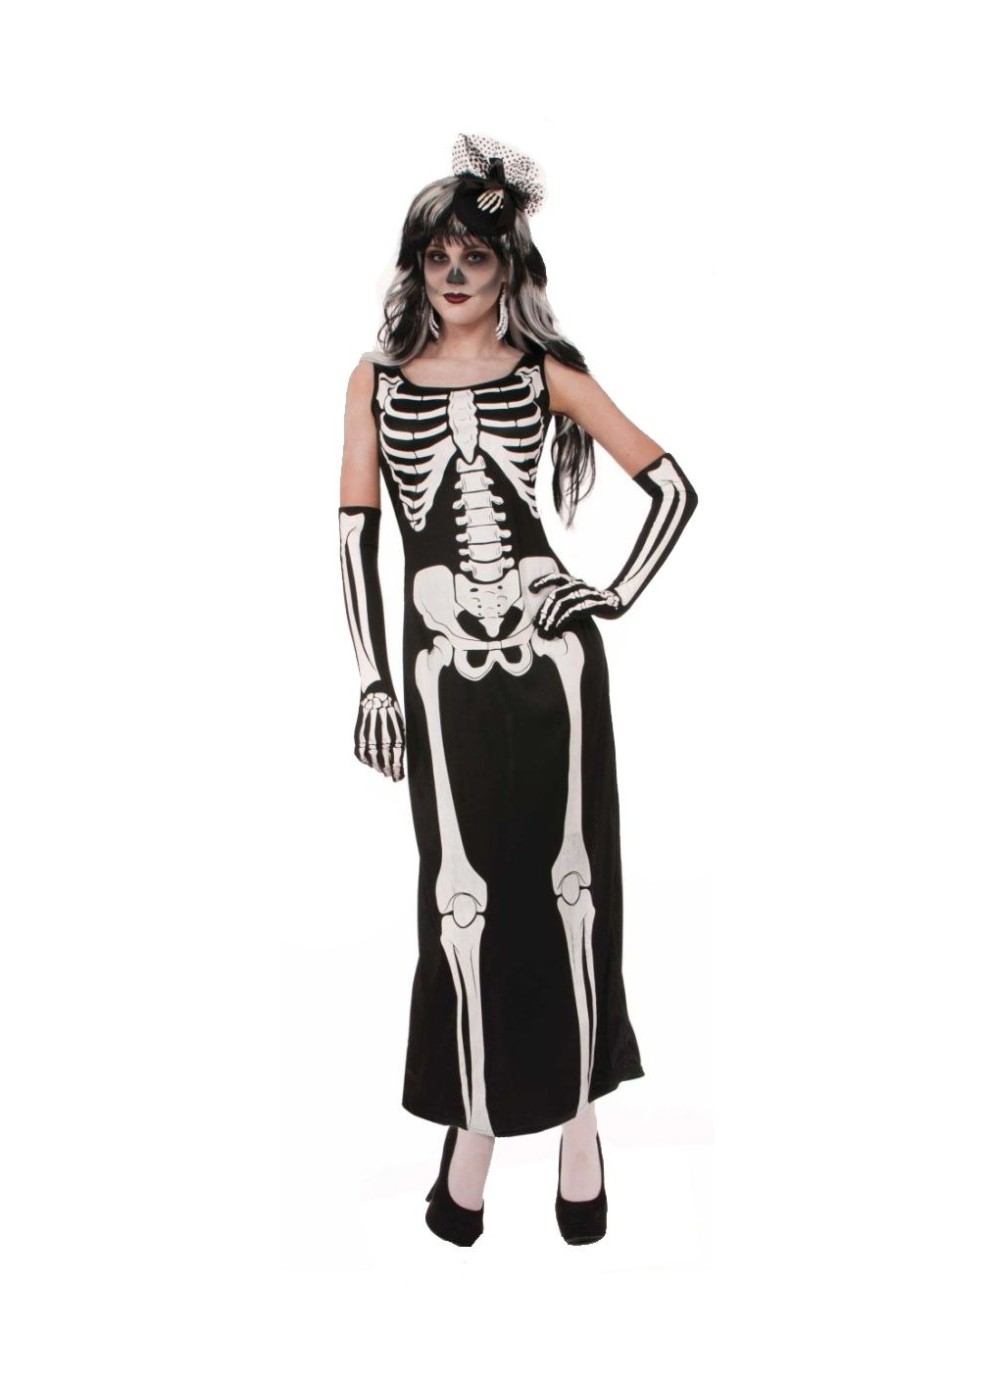  Skeleton Maxi Costume